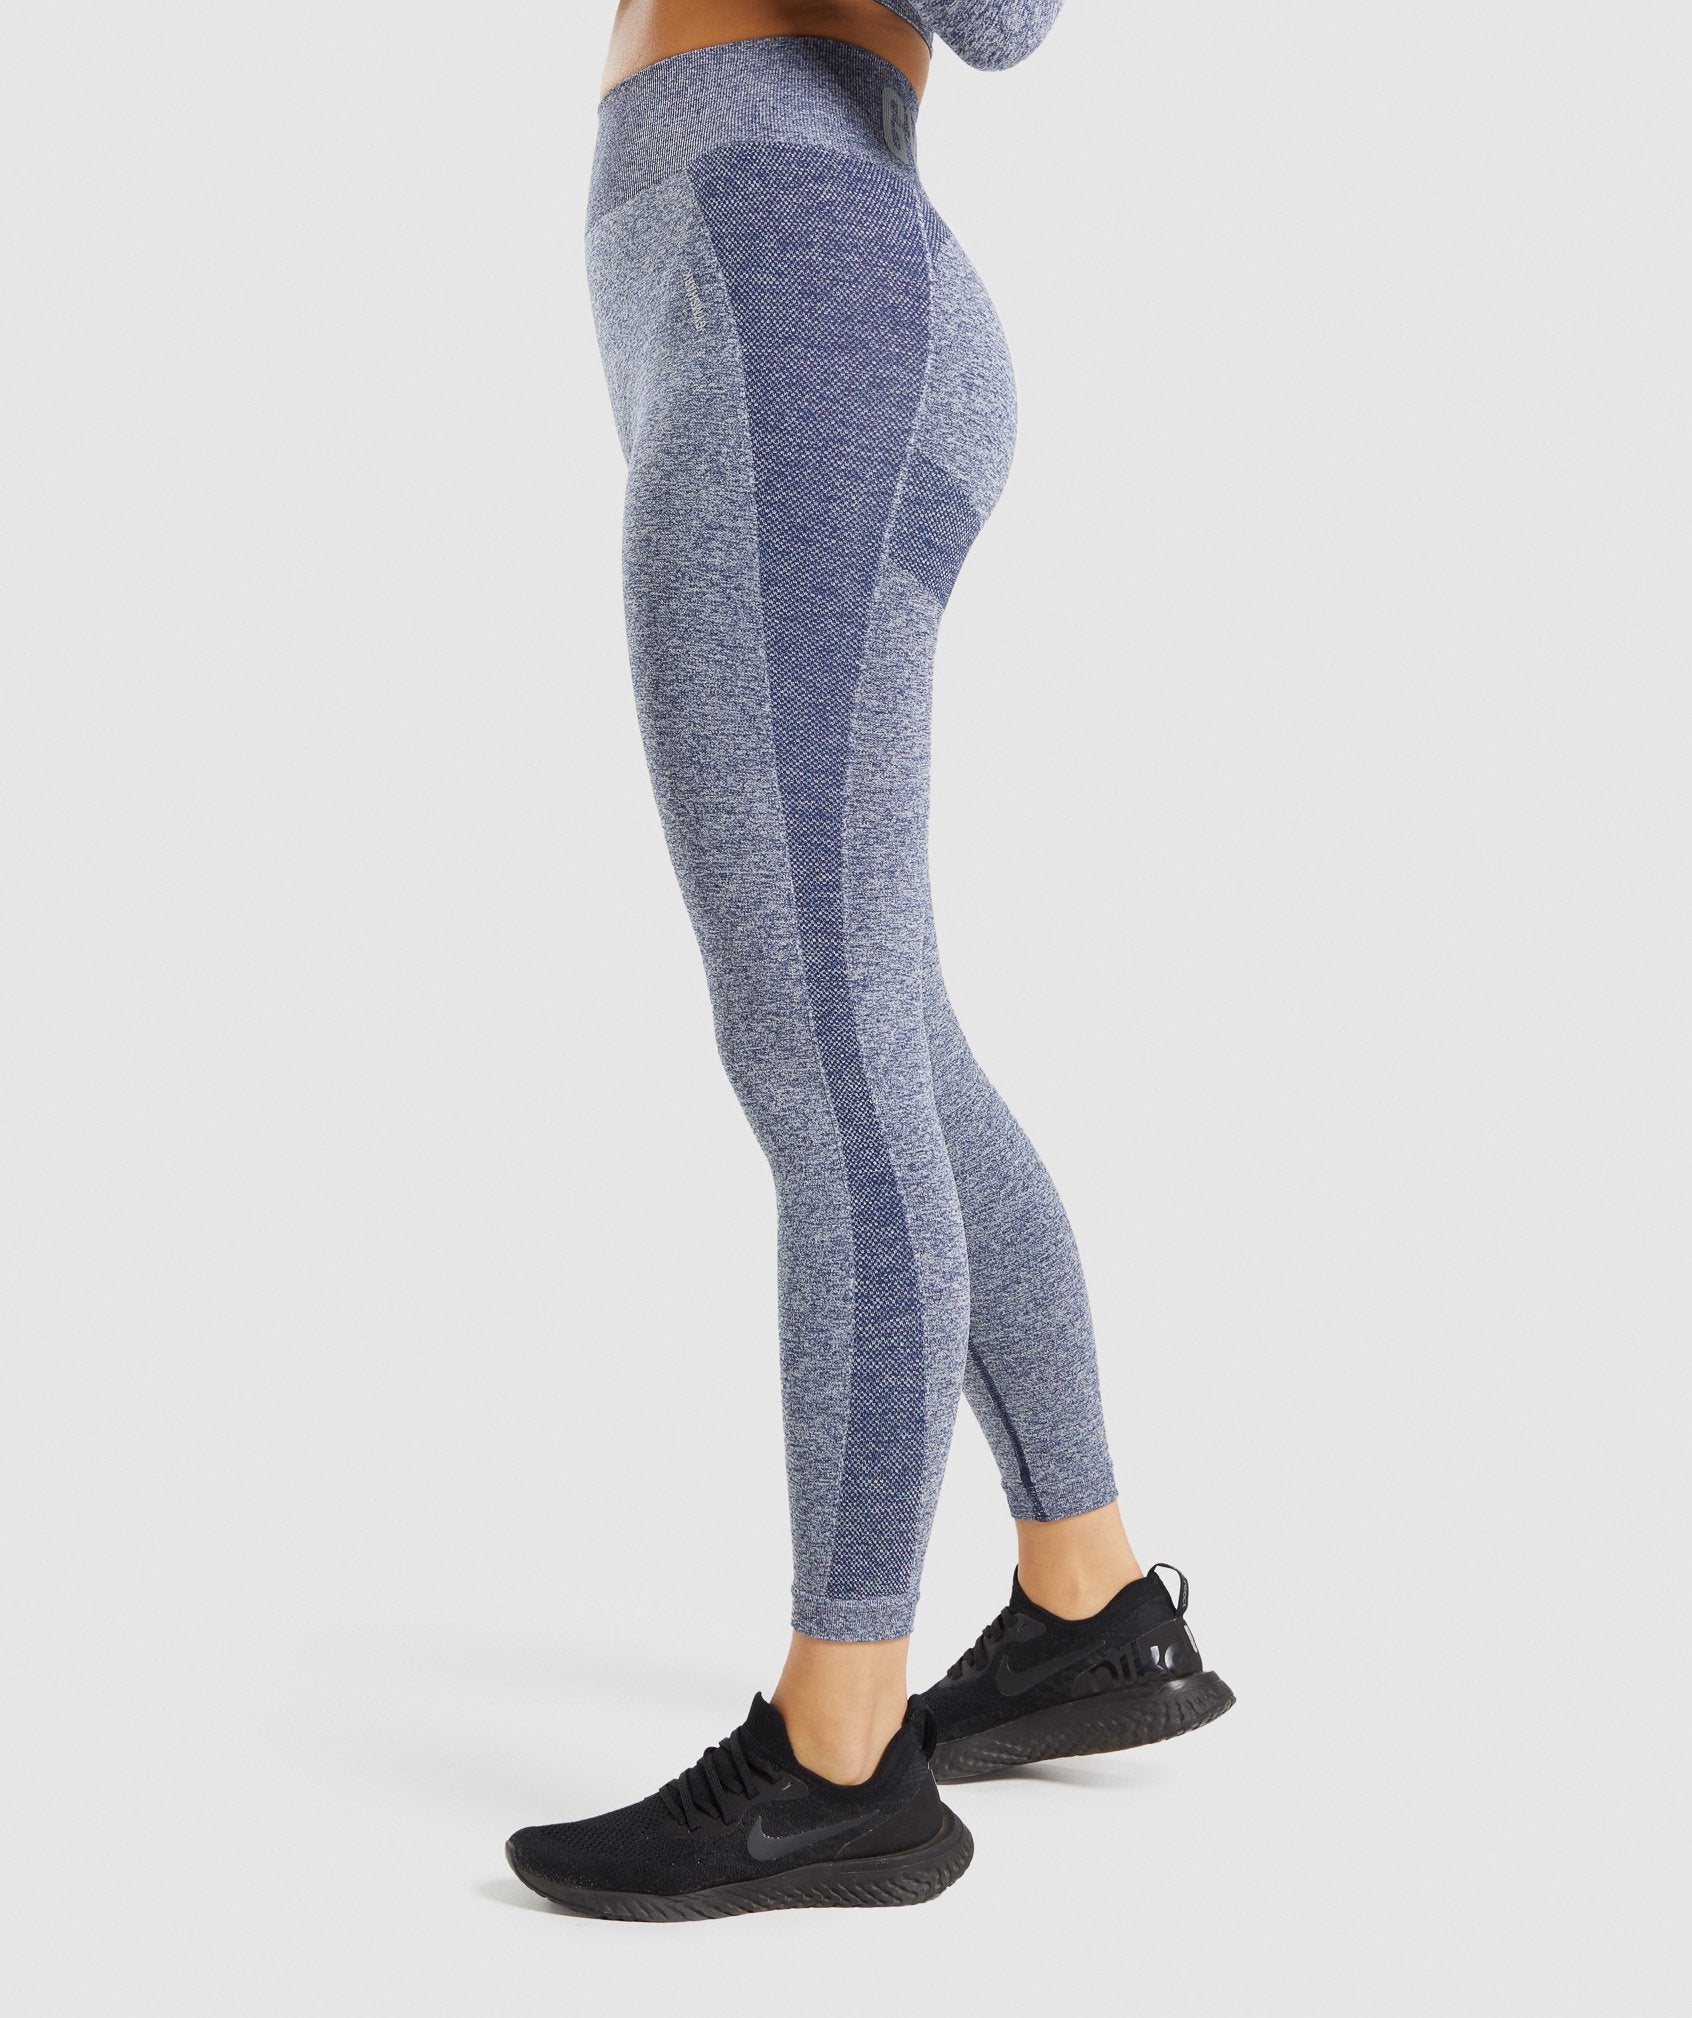 GymShark Flex High-Waisted Leggings Navy Marl/Light Grey Brand New!